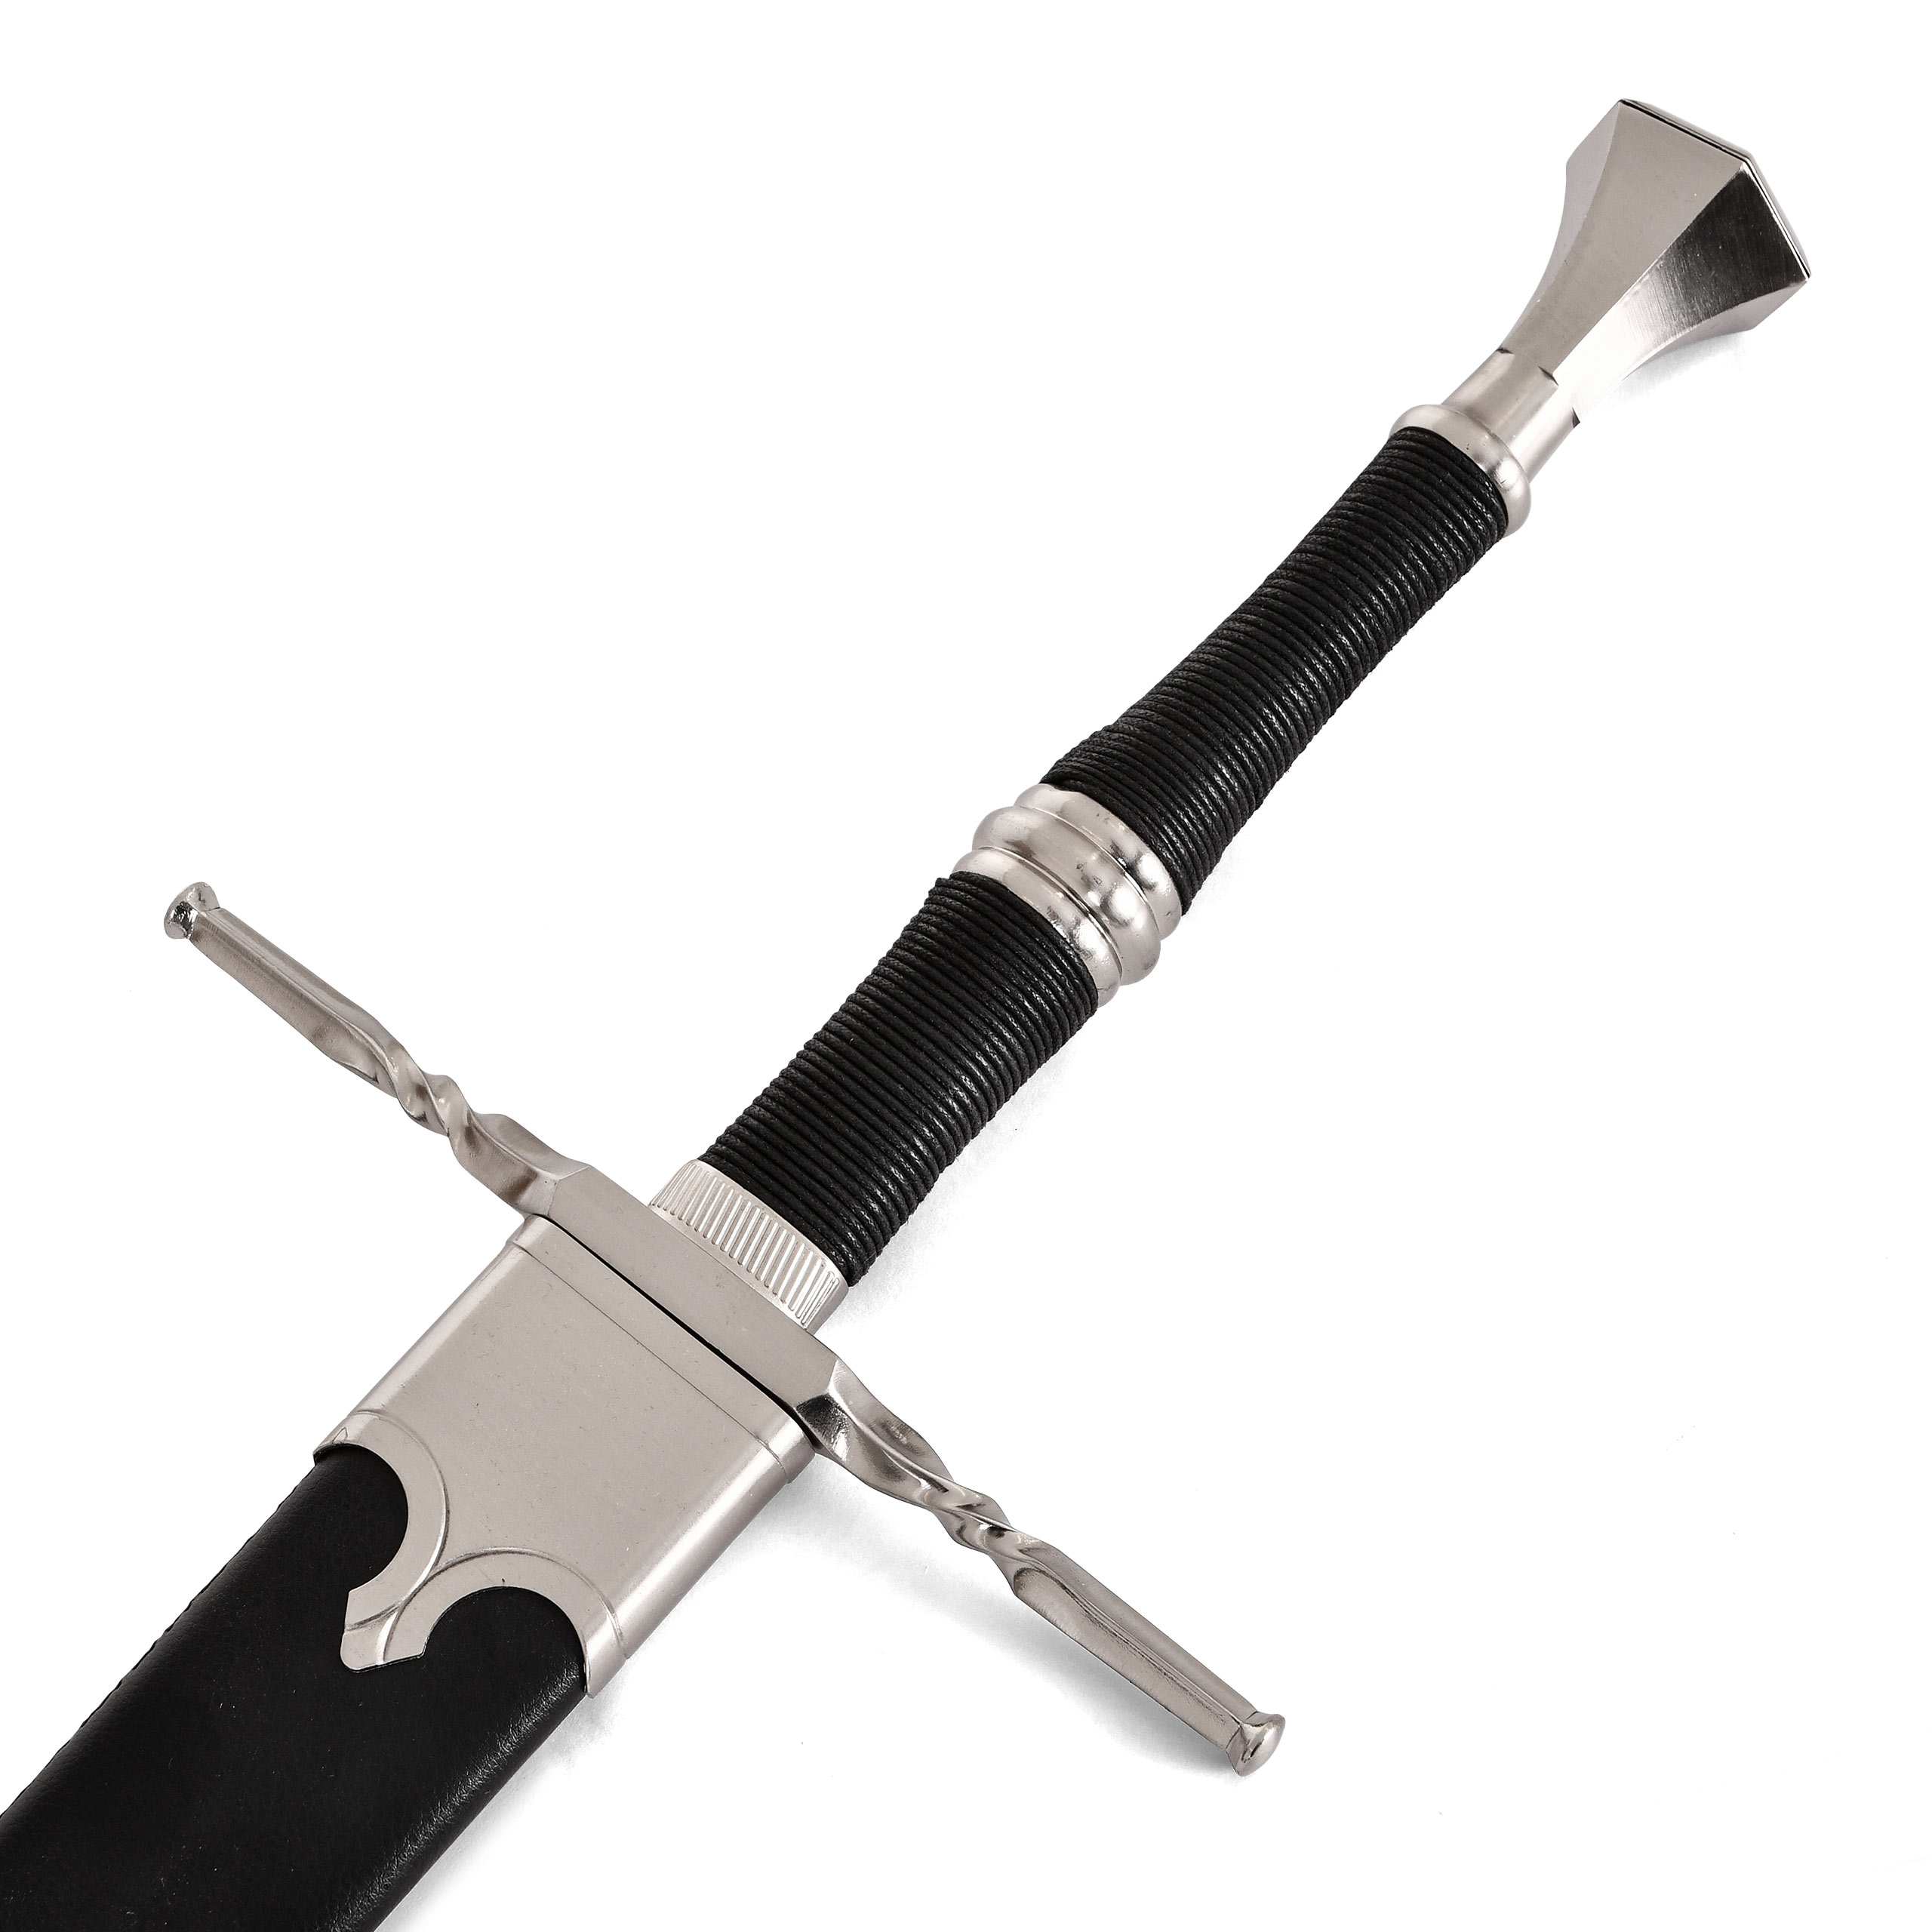 Réplique de l'épée en acier de Geralt de Rivia avec fourreau pour les fans de Witcher